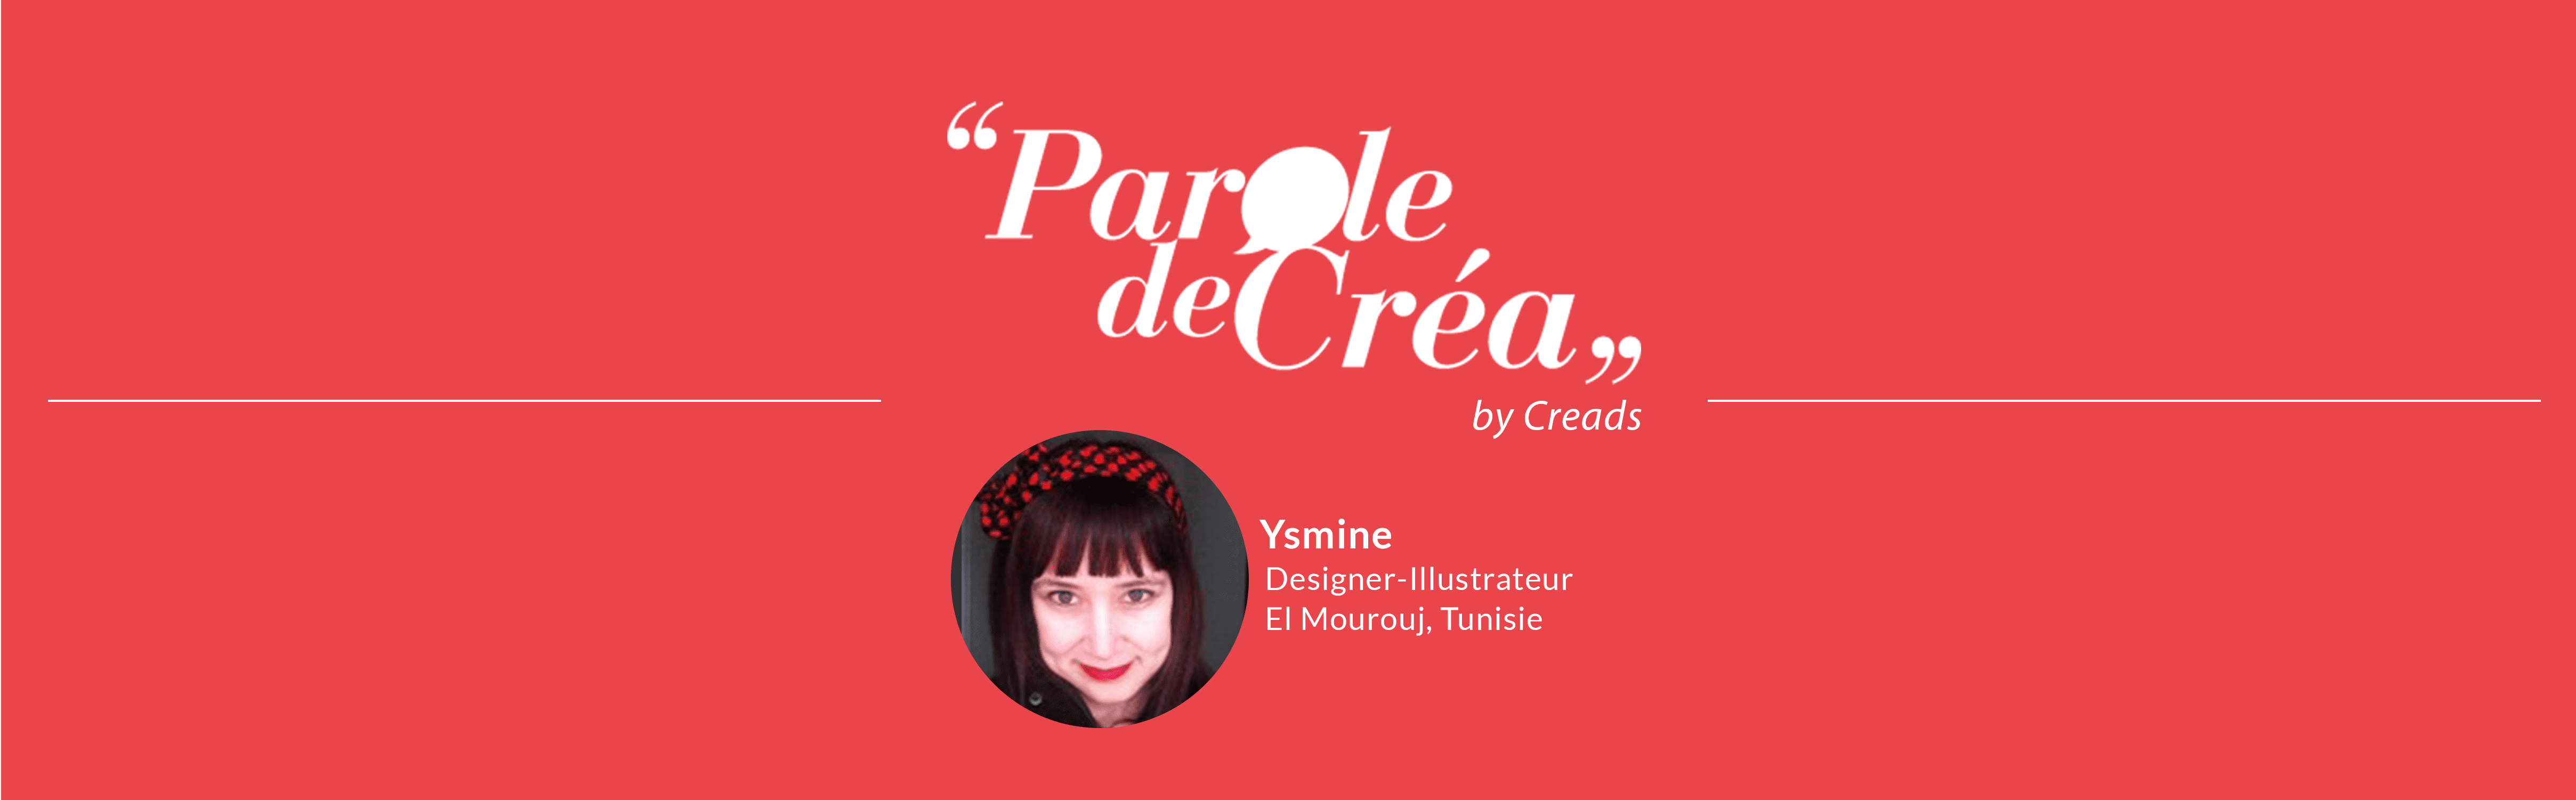 Ysmine Designer illustrateur freelance Tunisie